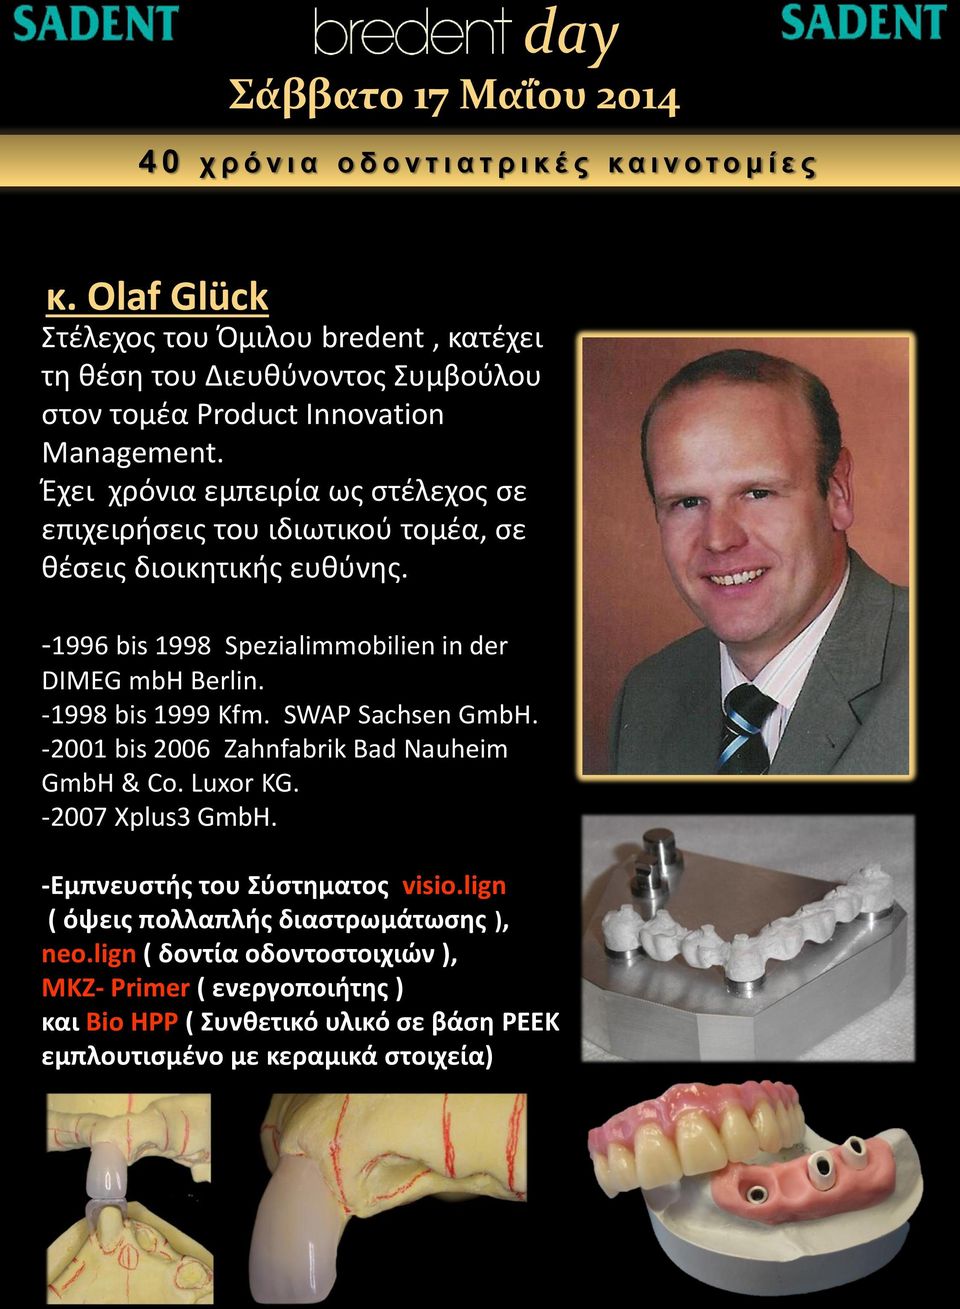 -1996 bis 1998 Spezialimmobilien in der DIMEG mbh Berlin. -1998 bis 1999 Kfm. SWAP Sachsen GmbH. -2001 bis 2006 Zahnfabrik Bad Nauheim GmbH & Co. Luxor KG.